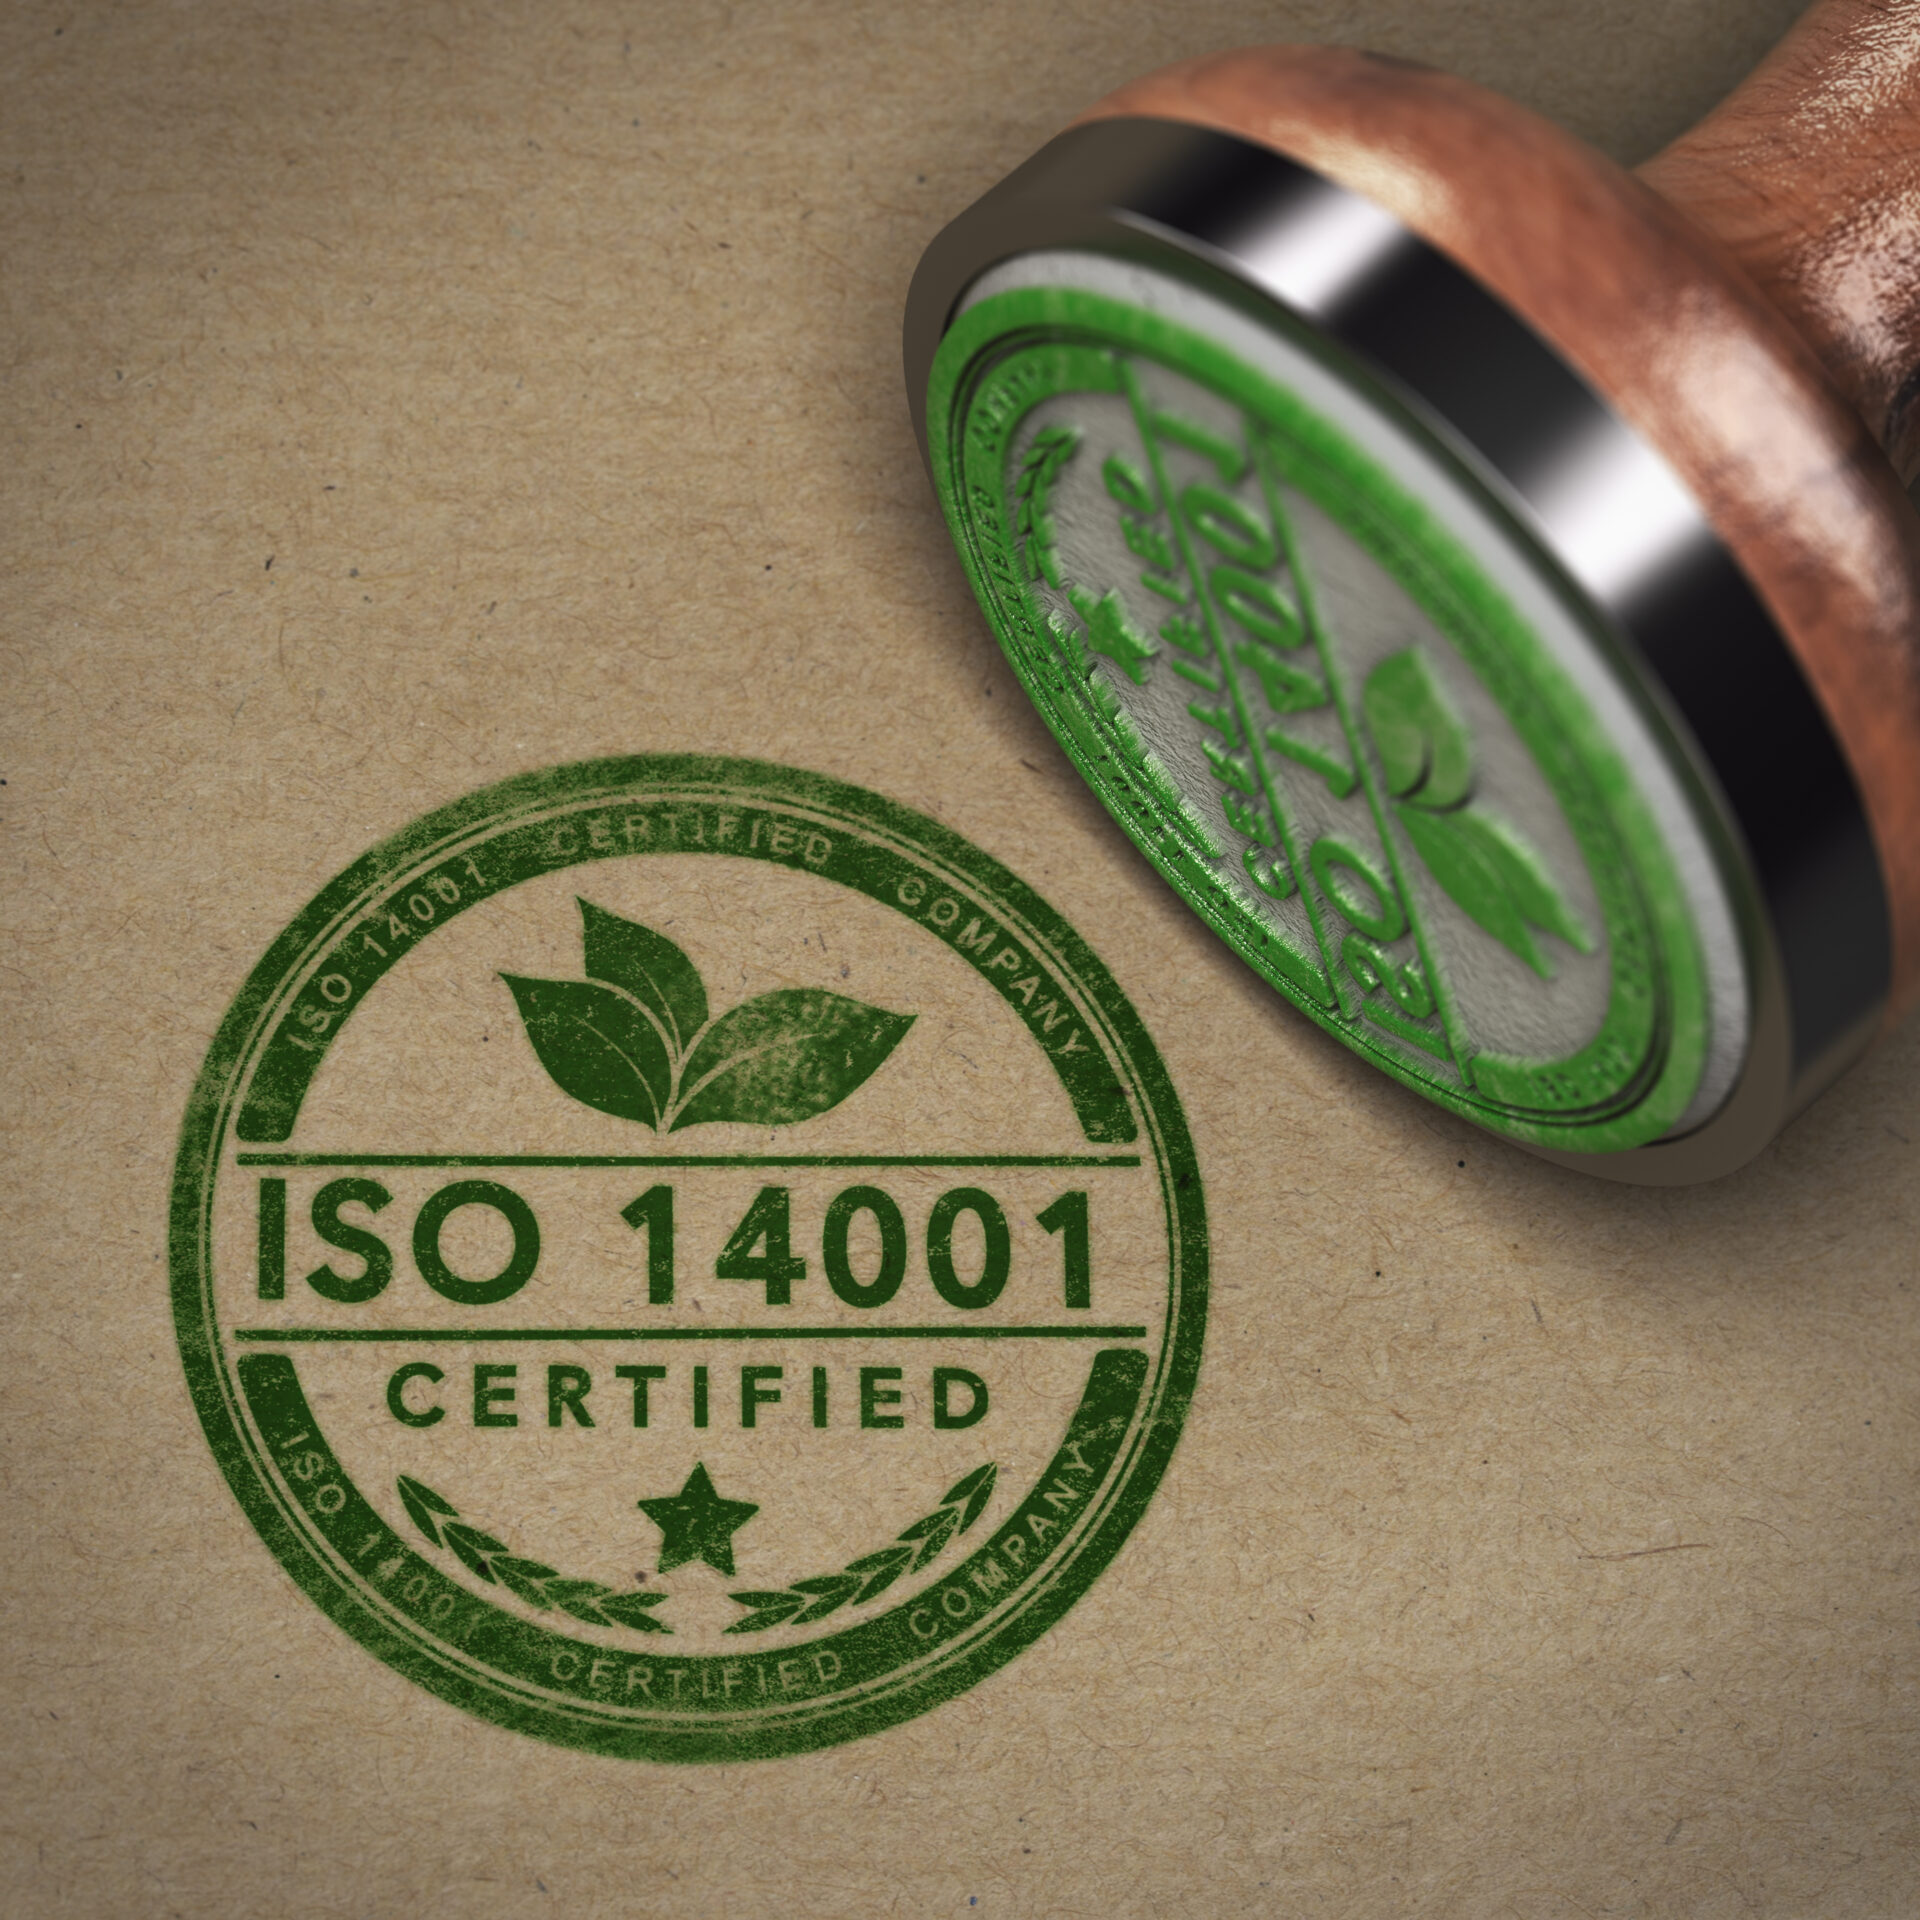 A Worldsensing tem agora a certificação ISO 14001